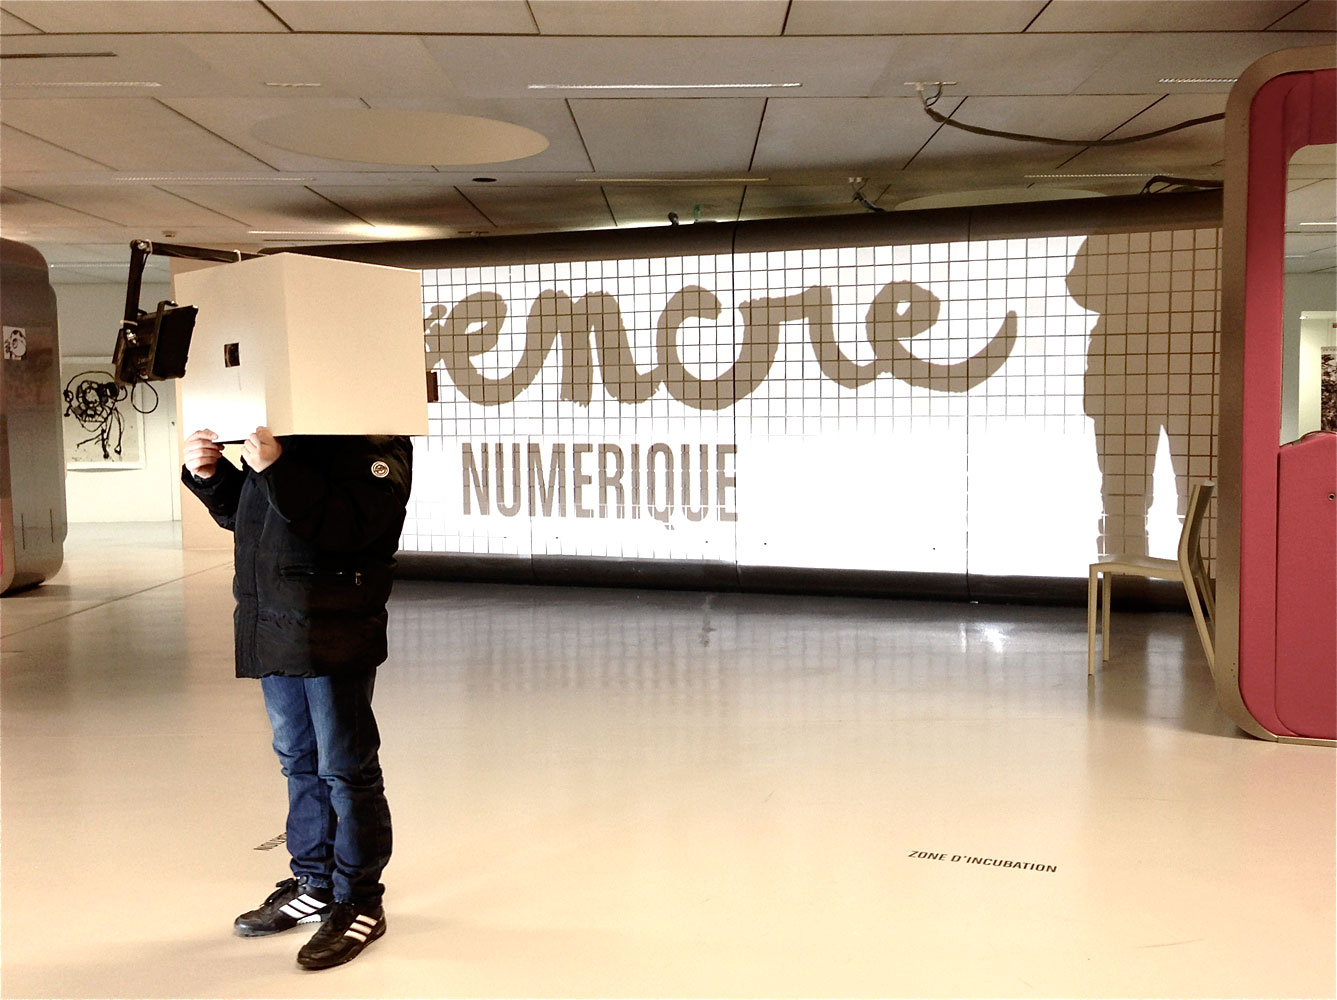 L'incubateur Le cube (retraite créative du projet Vas-y s’ouvre à son public.Un cube, un isoloir et surtout une expérience audio-visuelle pour (re)vivre un Jardin d’Hiver(s) dans lequel les membres du projet Vas-y se sont immergés durant 60 jours.
Installation proposée au cours de l'exposition Encre Numérique à la Gaïté Lyrique, Paris.  